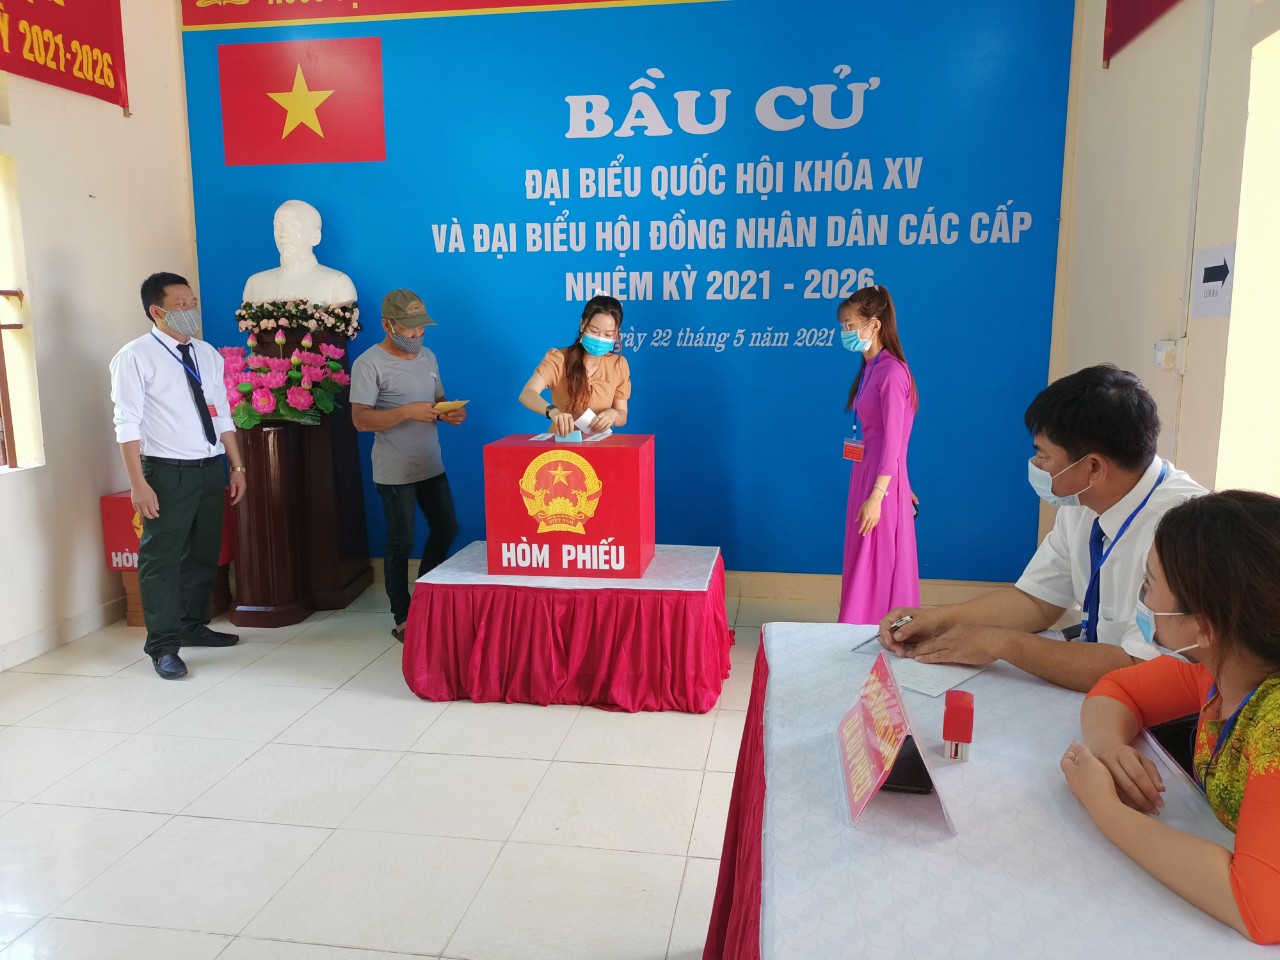 Hải Phòng: Khai mạc bầu cử sớm tại huyện đảo Bạch Long Vỹ - Ảnh 2.